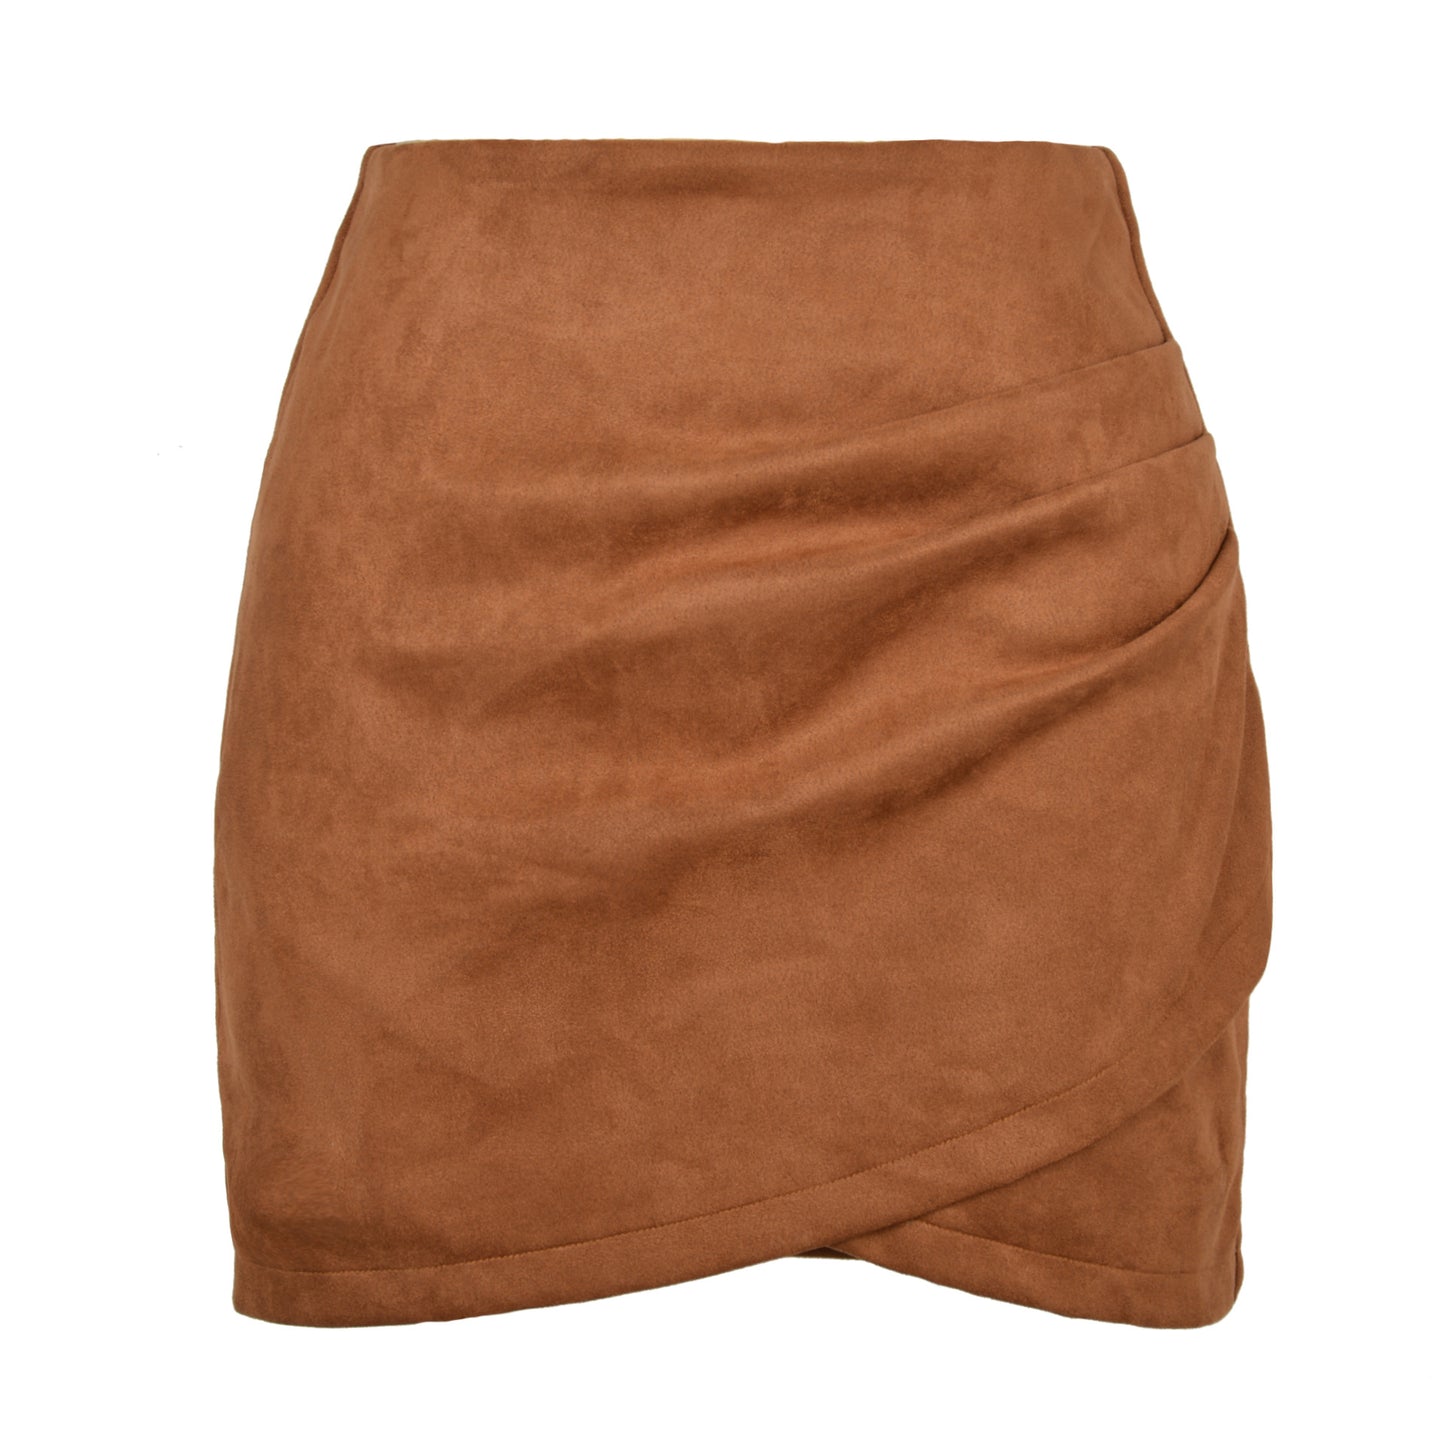 Suede Pleated Criss Cross Irregular Asymmetric Zipper Skirt